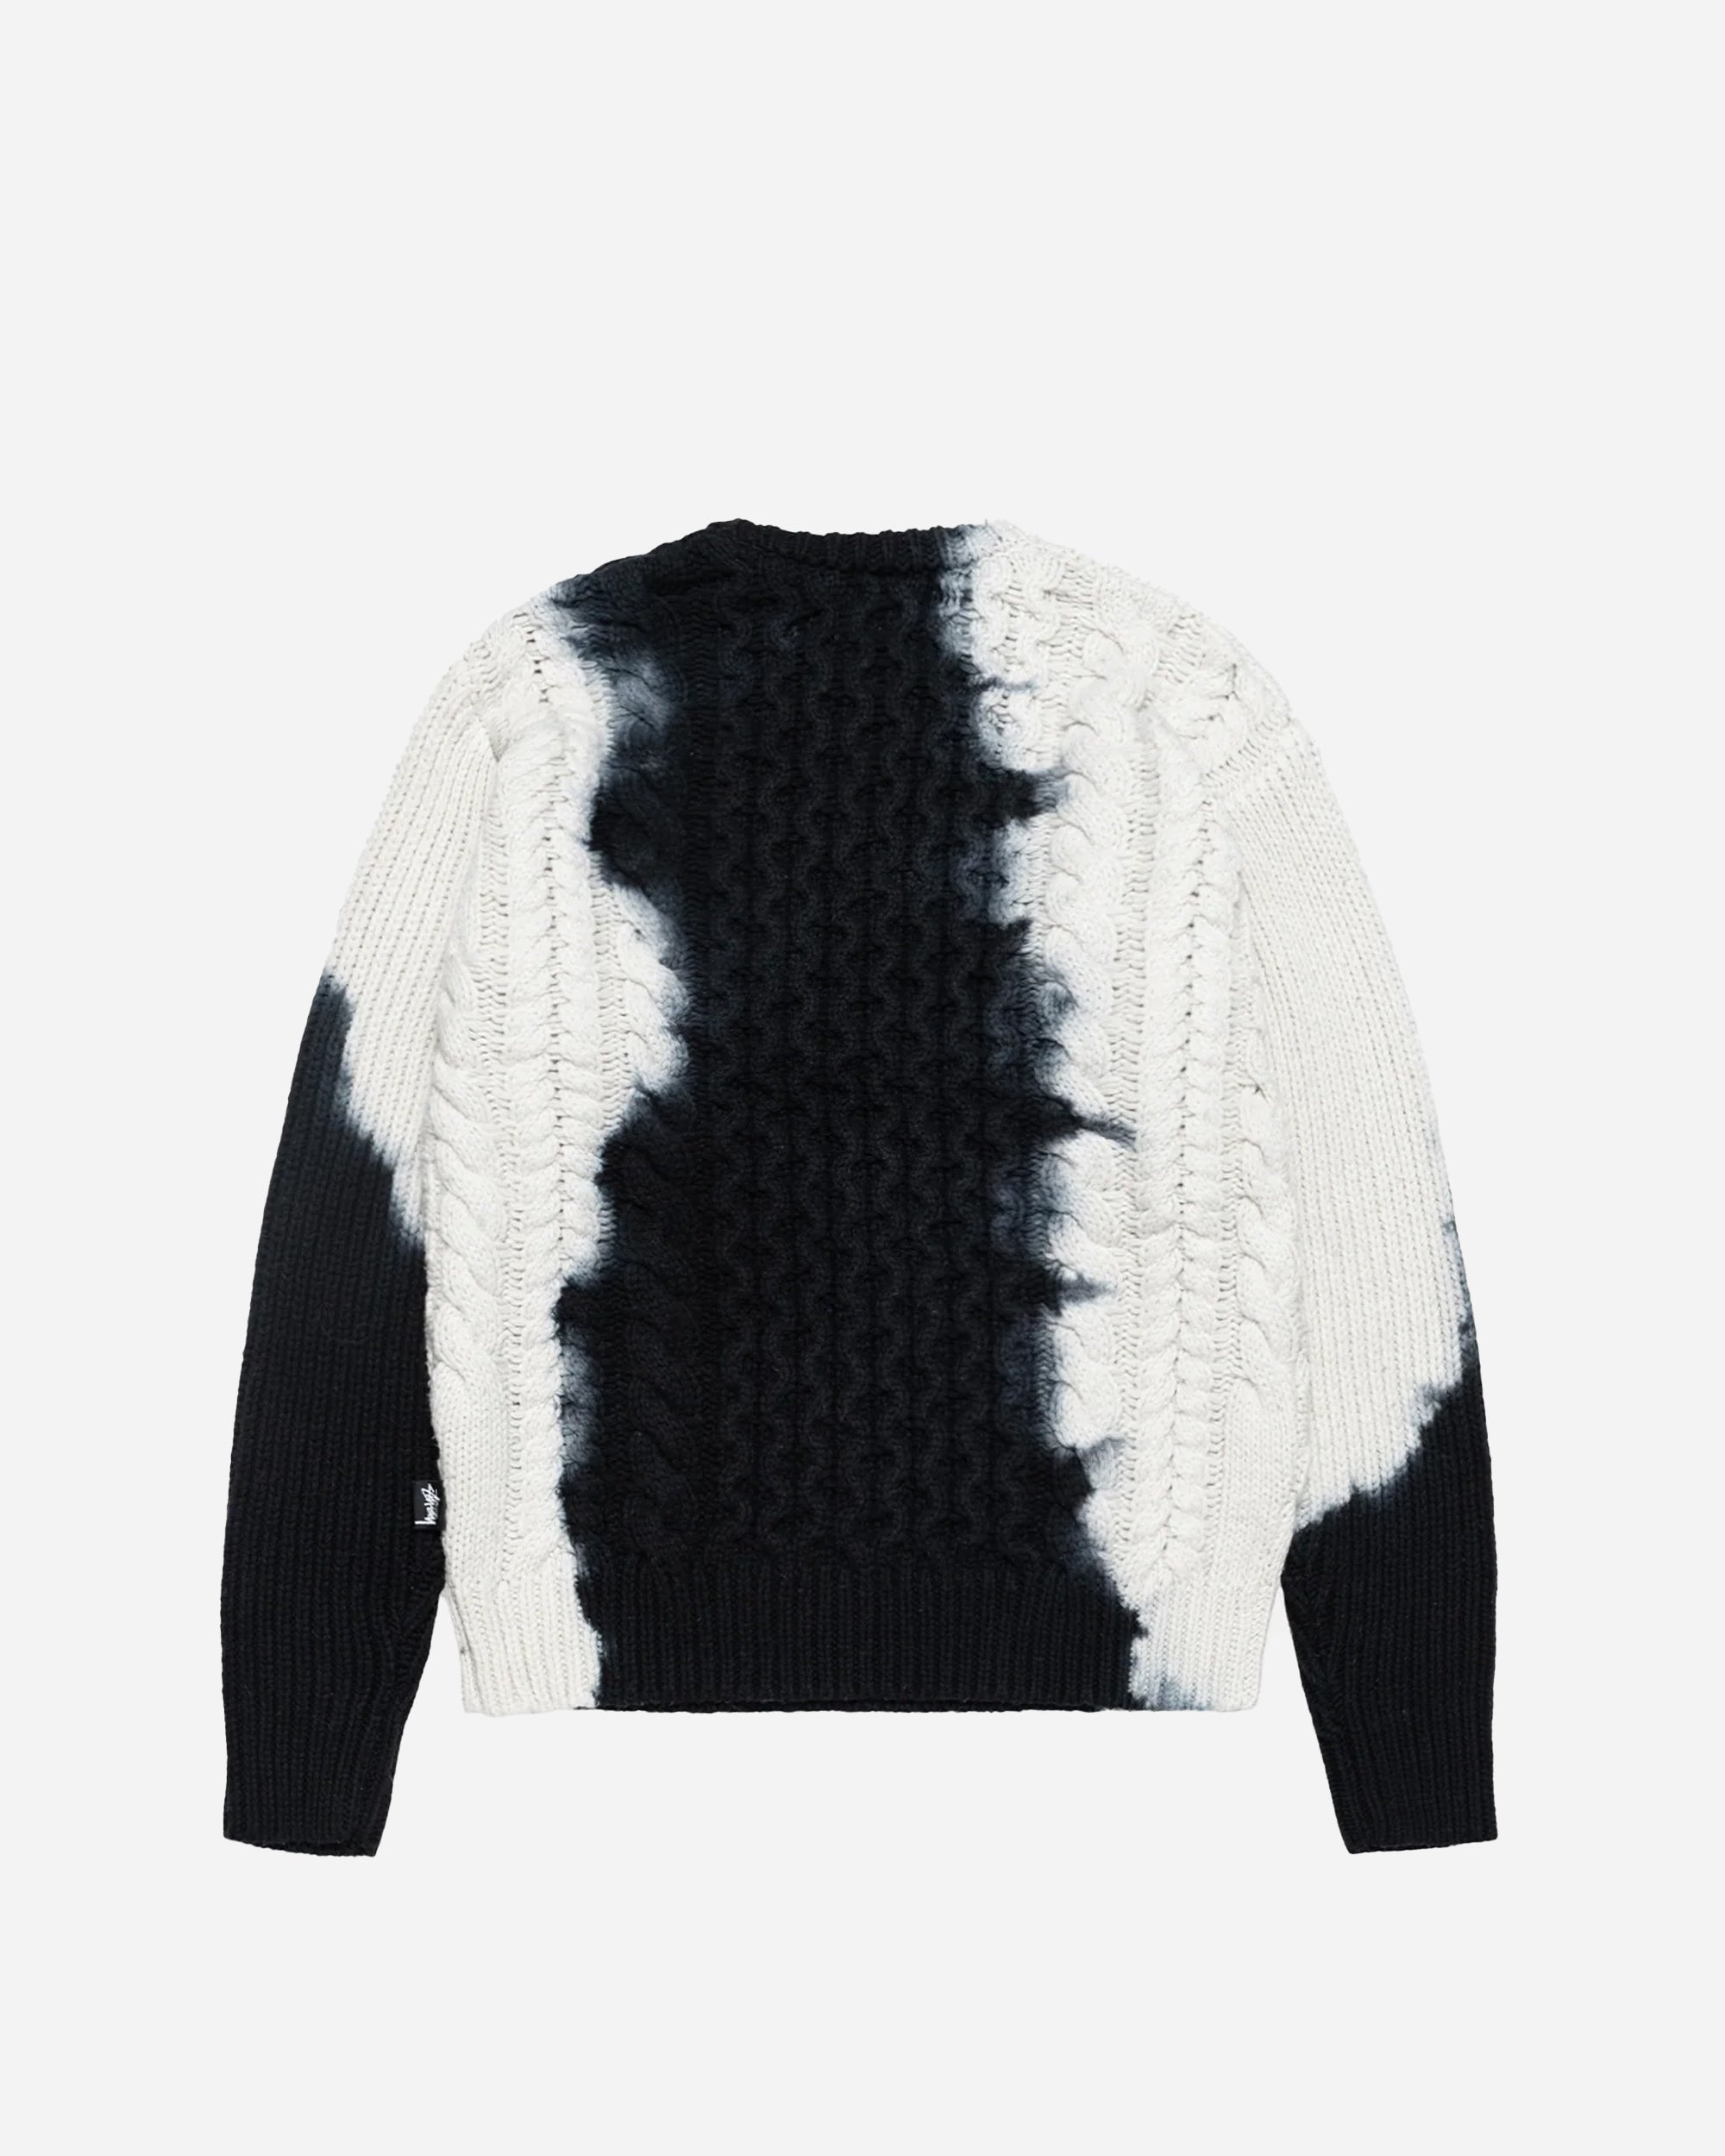 Stüssy Tie Dye Fisherman Sweater black 117188-0001